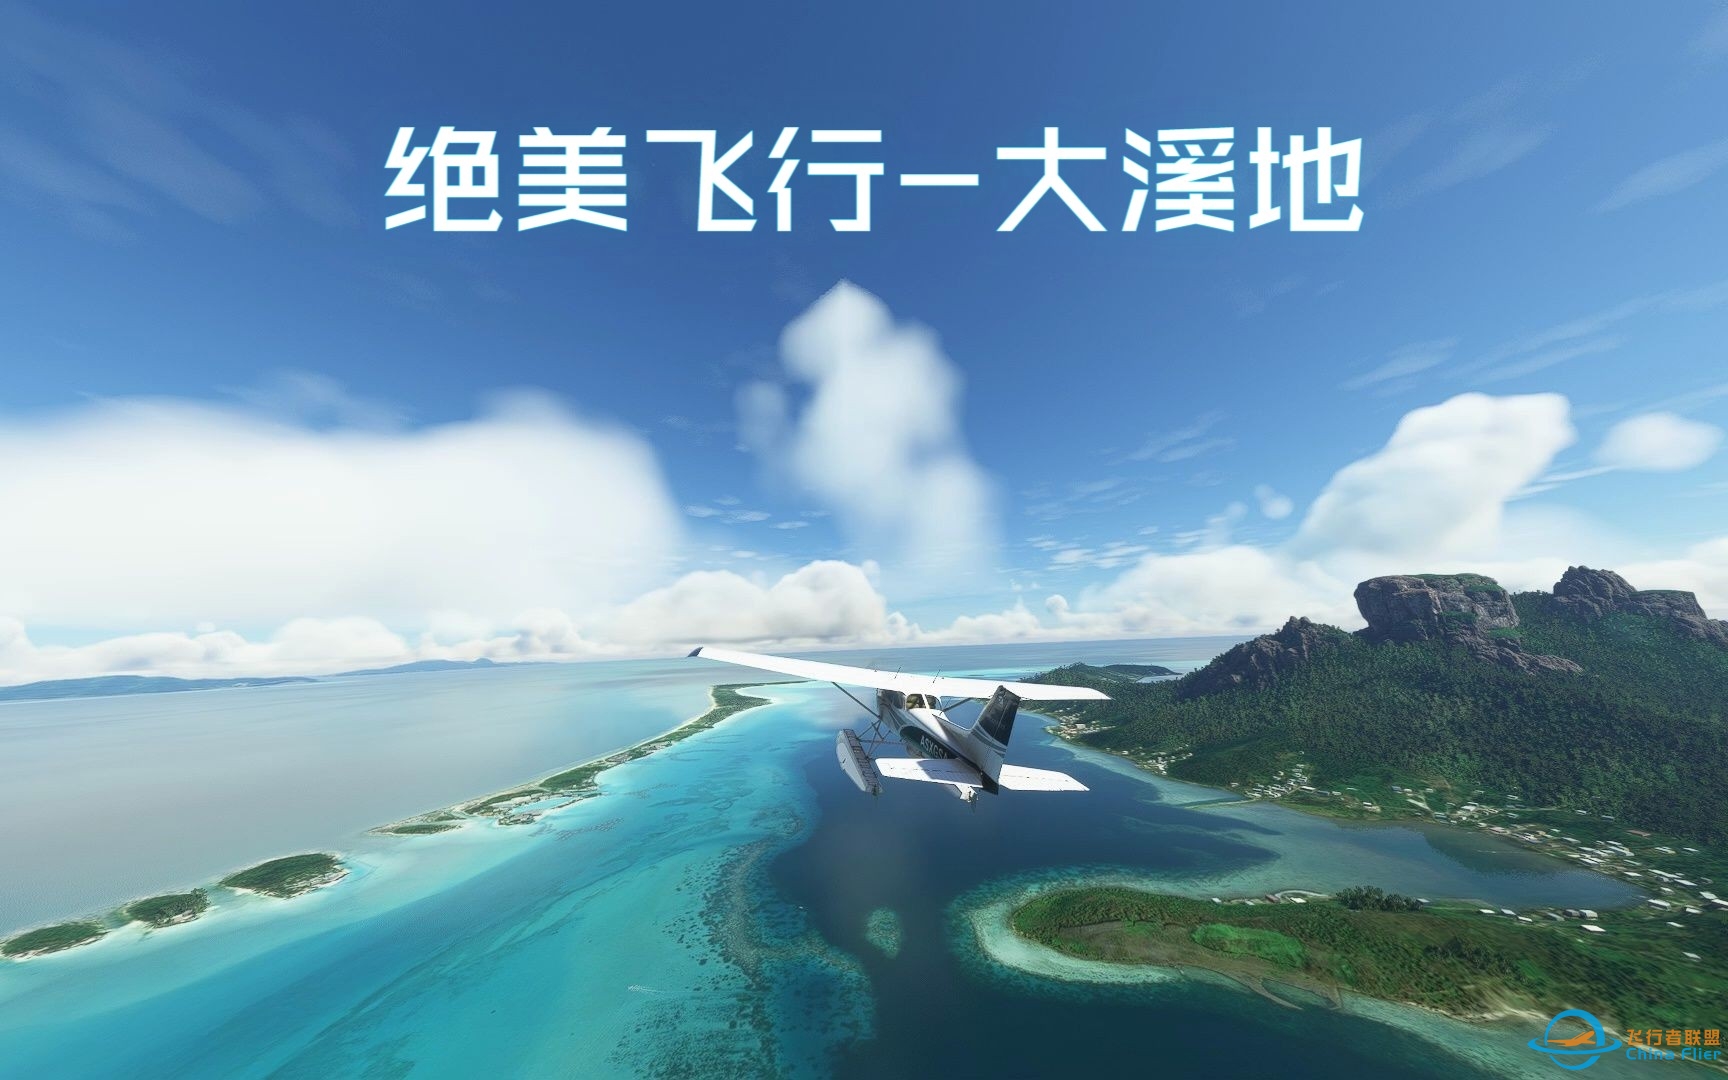 【微软模拟飞行】大溪地绝美飞行 | 塞斯纳172观光飞行-10 